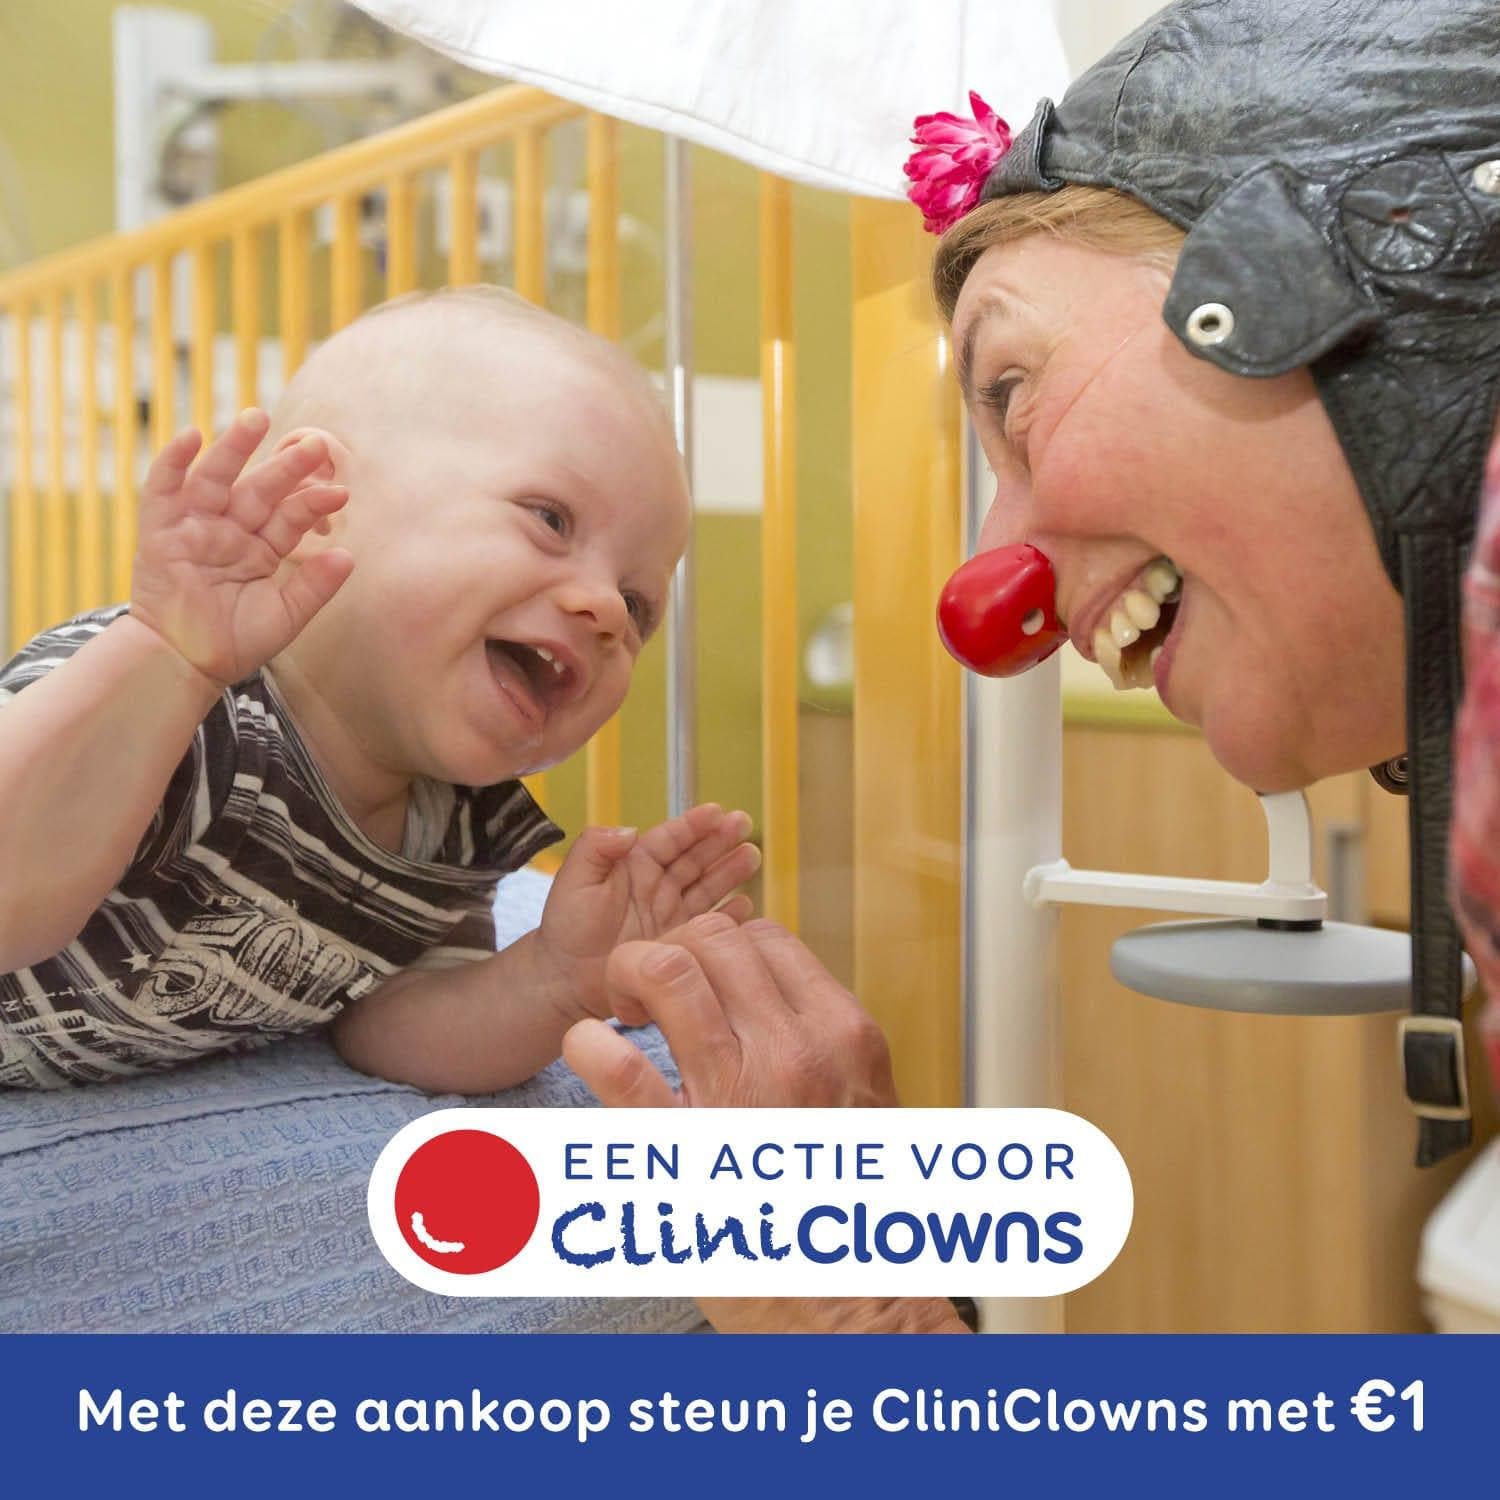 Met deze aankoop steun je CliniClowns met 1 euro